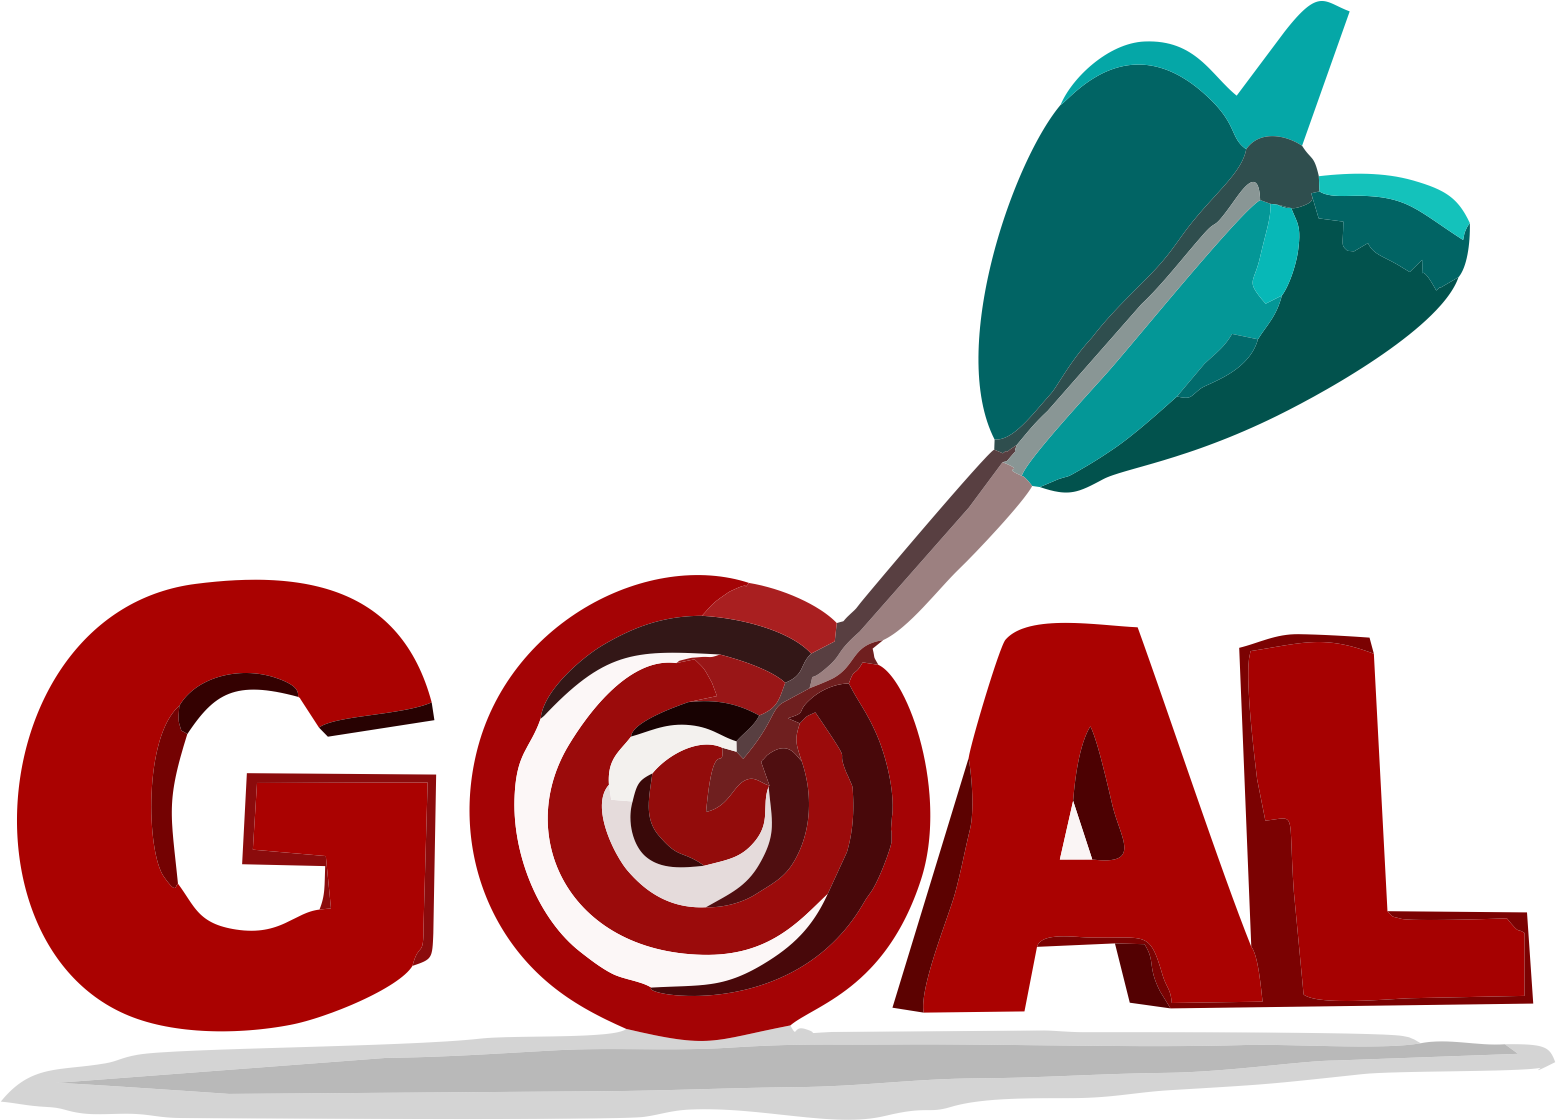 goal-setting-action-plan-coaching-target-png-download-1556-1120